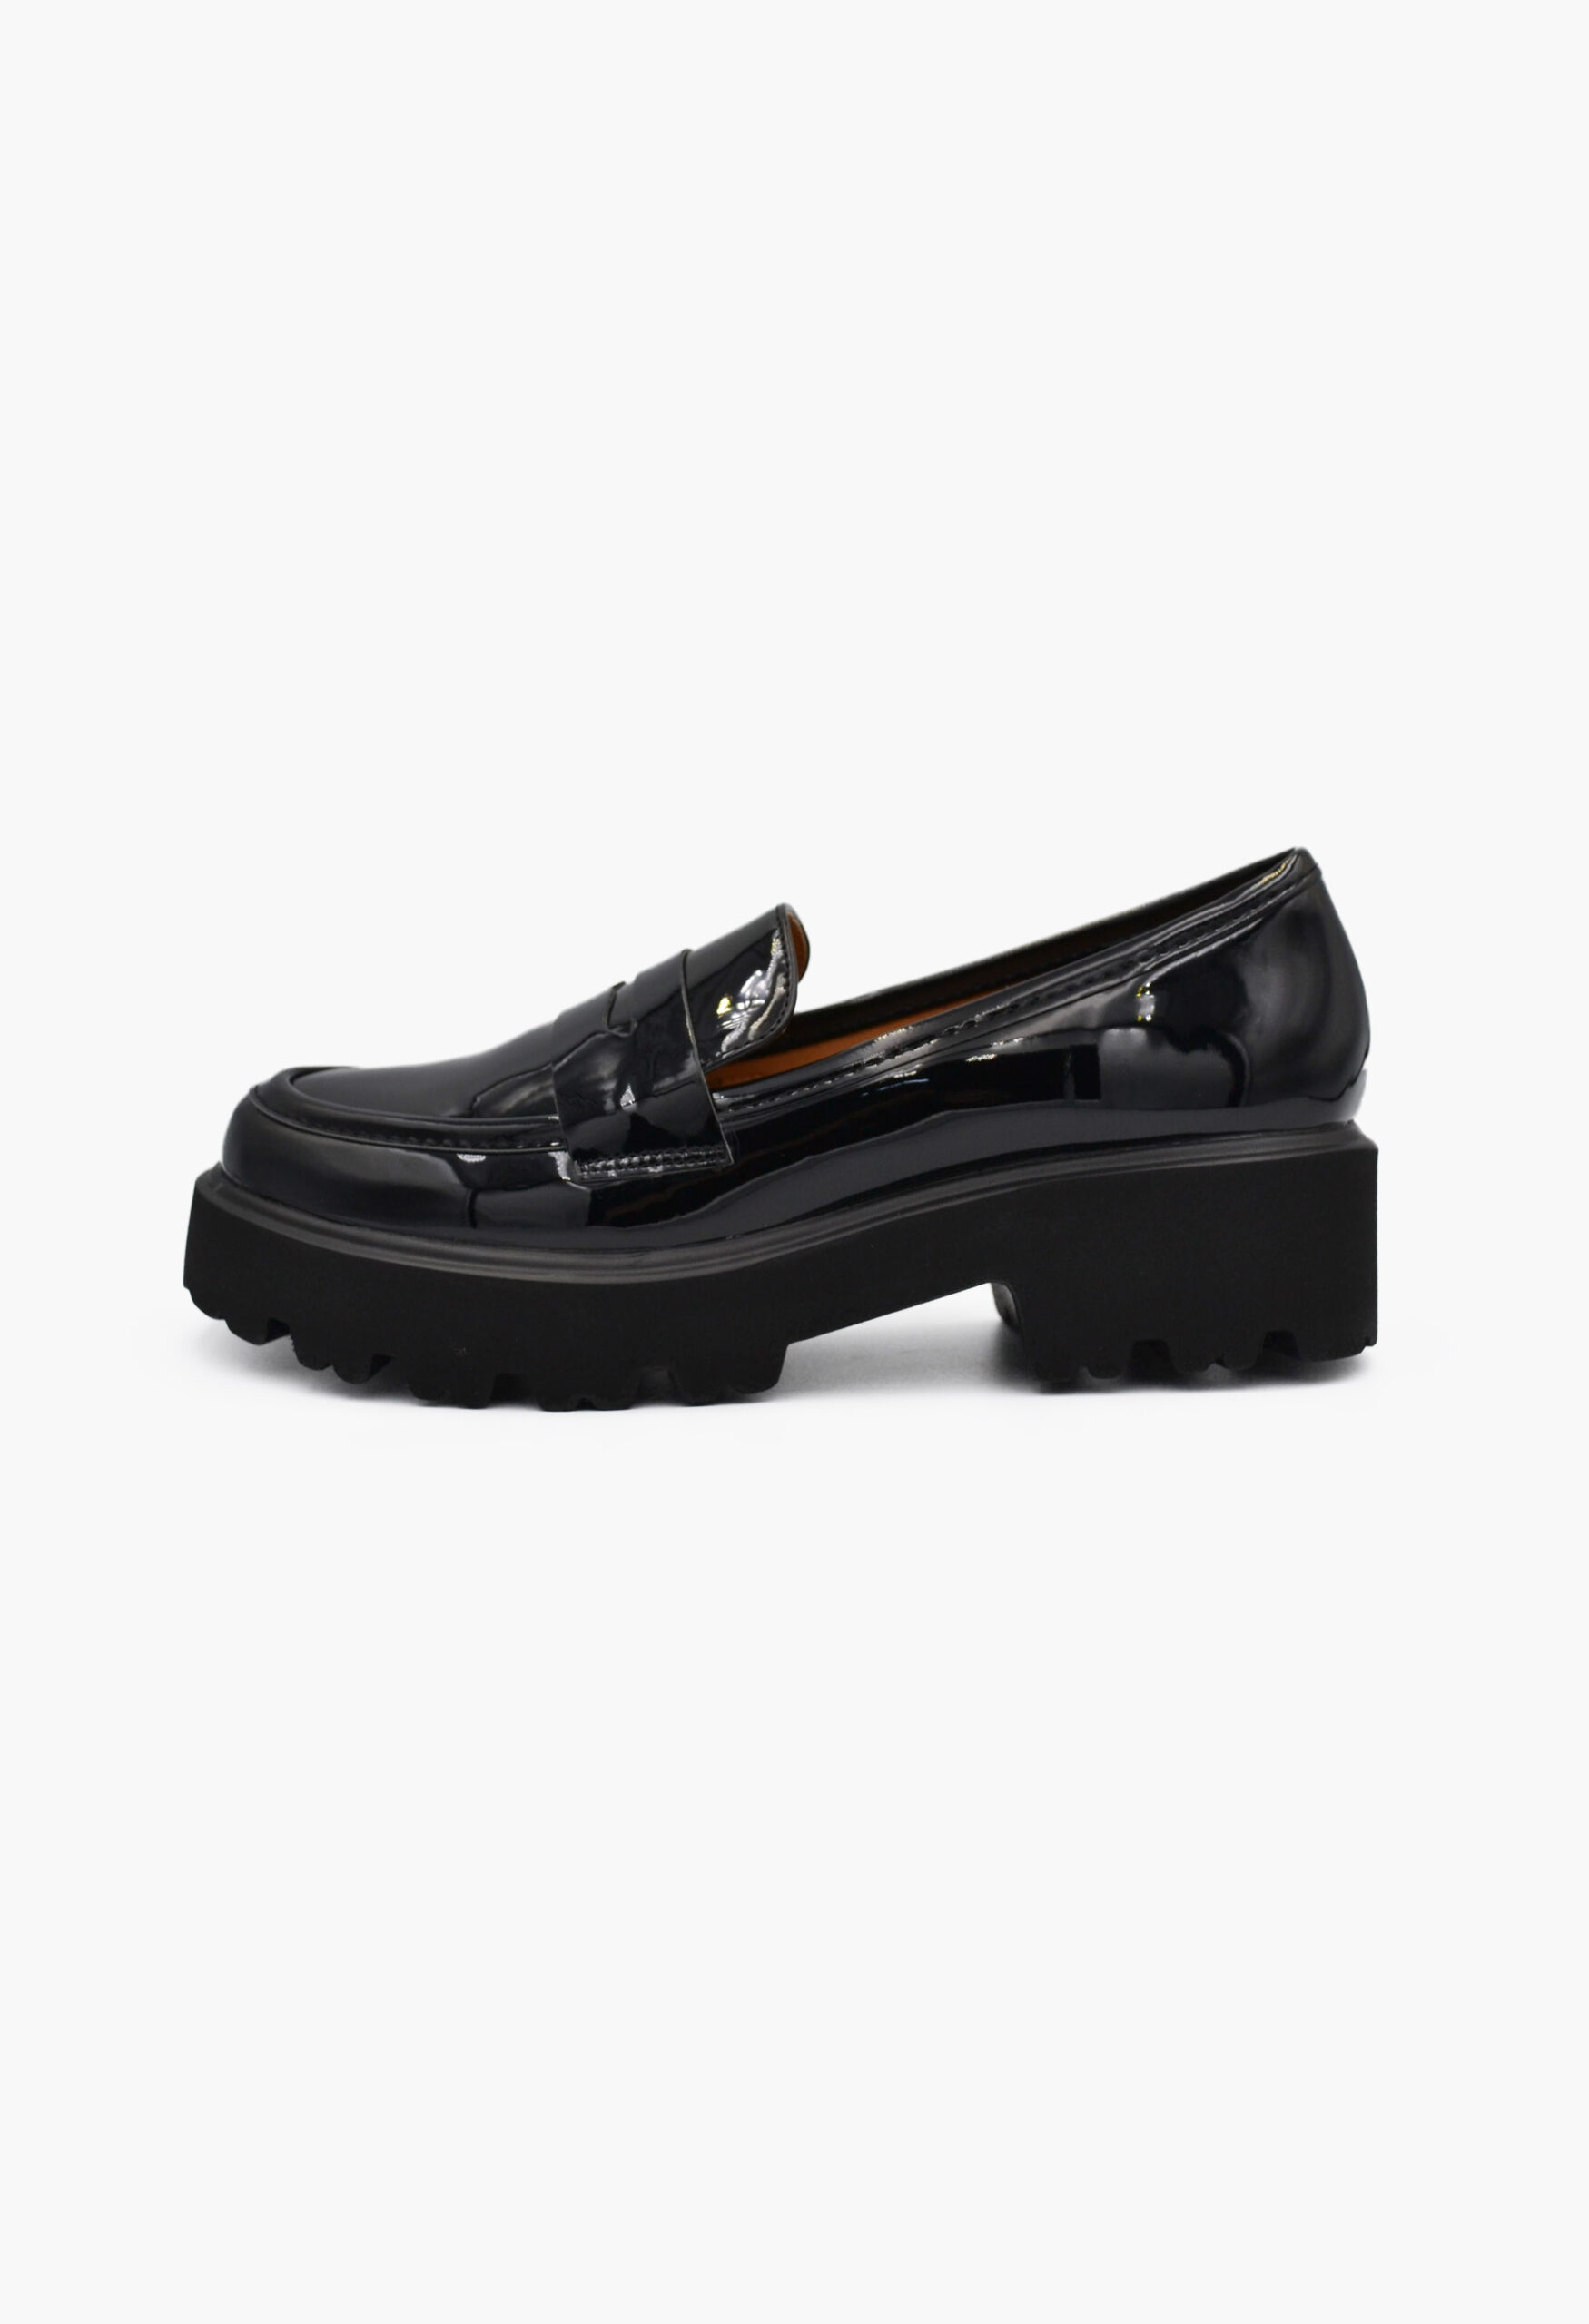 Γυναικεία Loafers σε Μαύρο Χρώμα / W-230-black Γυναικεία Oxfords & Loafers joya.gr